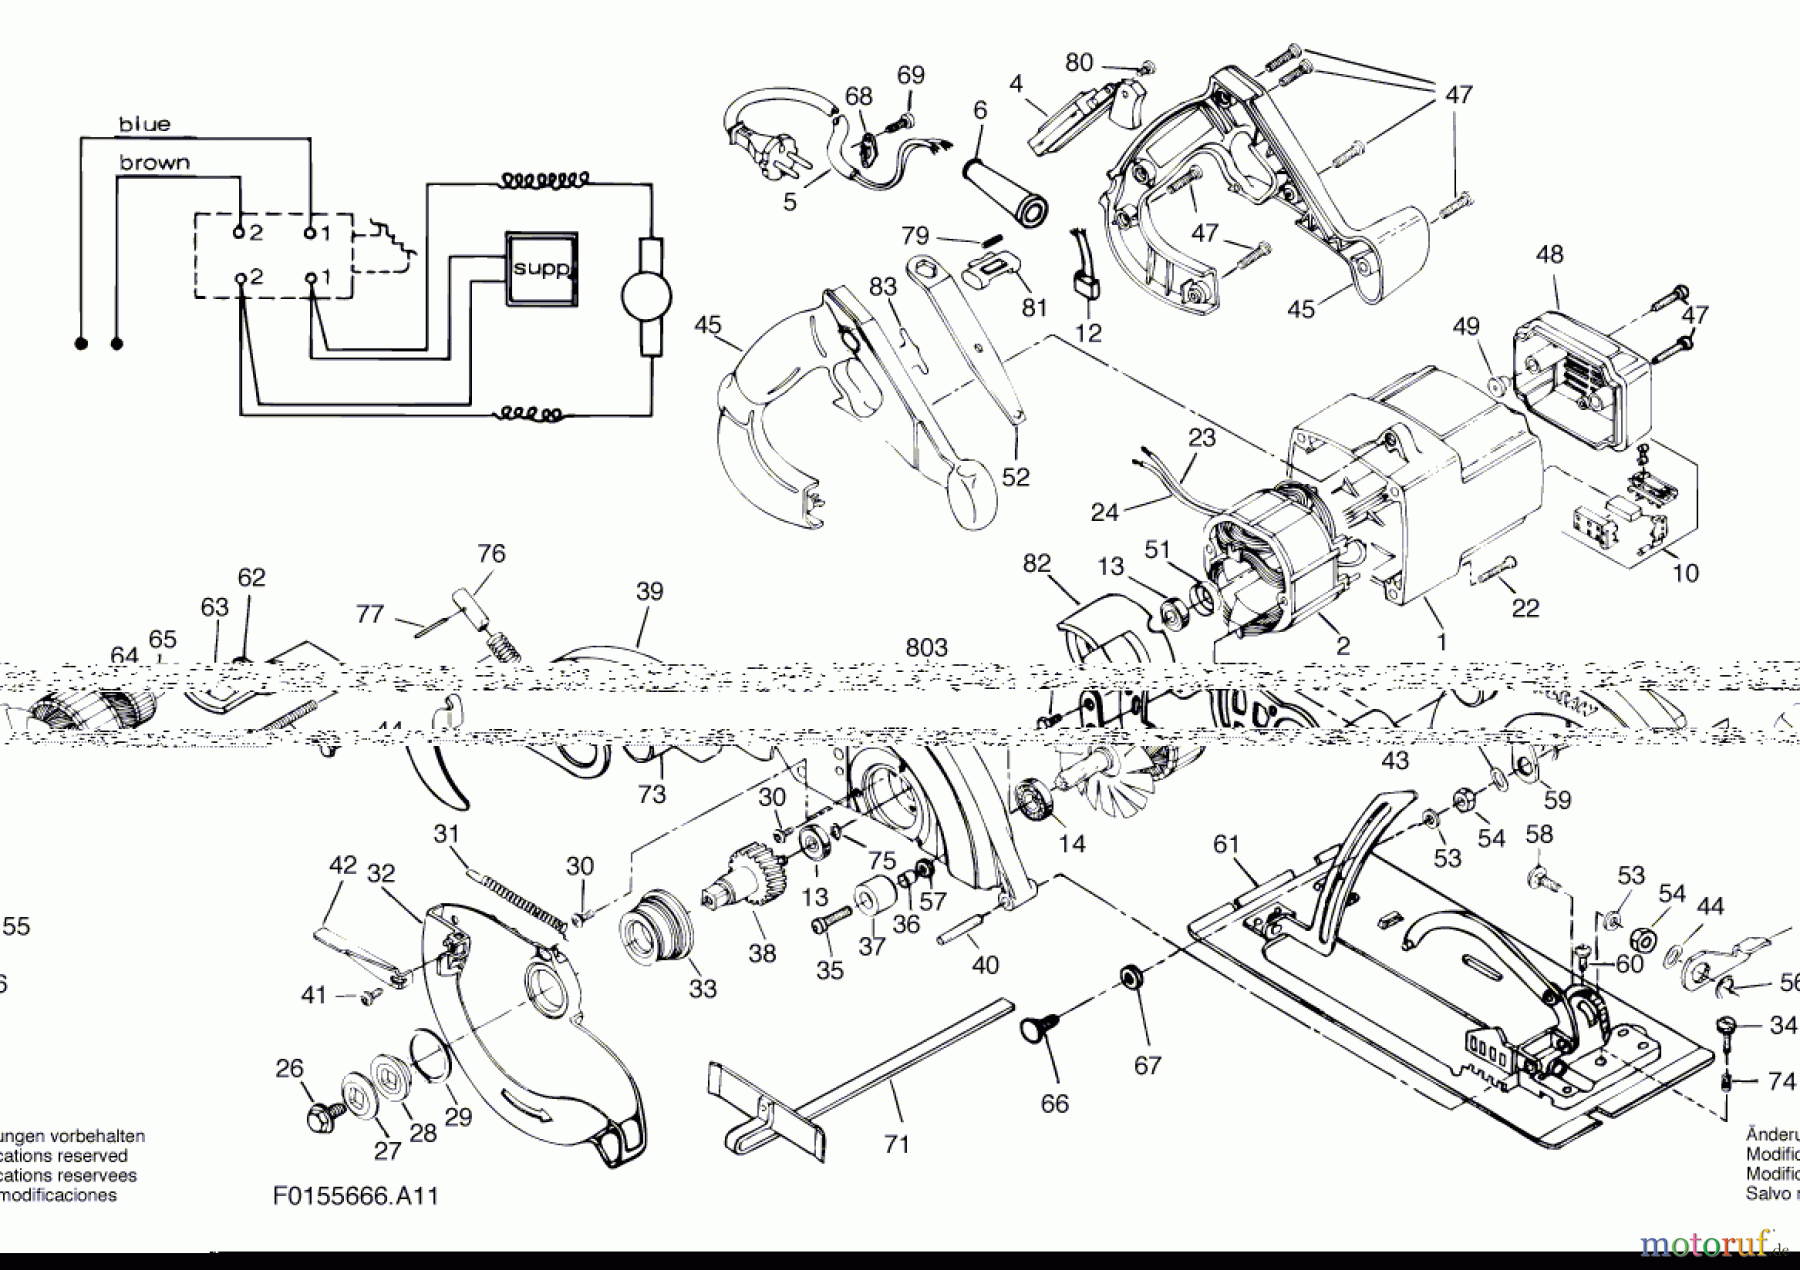  Bosch Werkzeug Handkreissäge 5666 U1 Seite 1